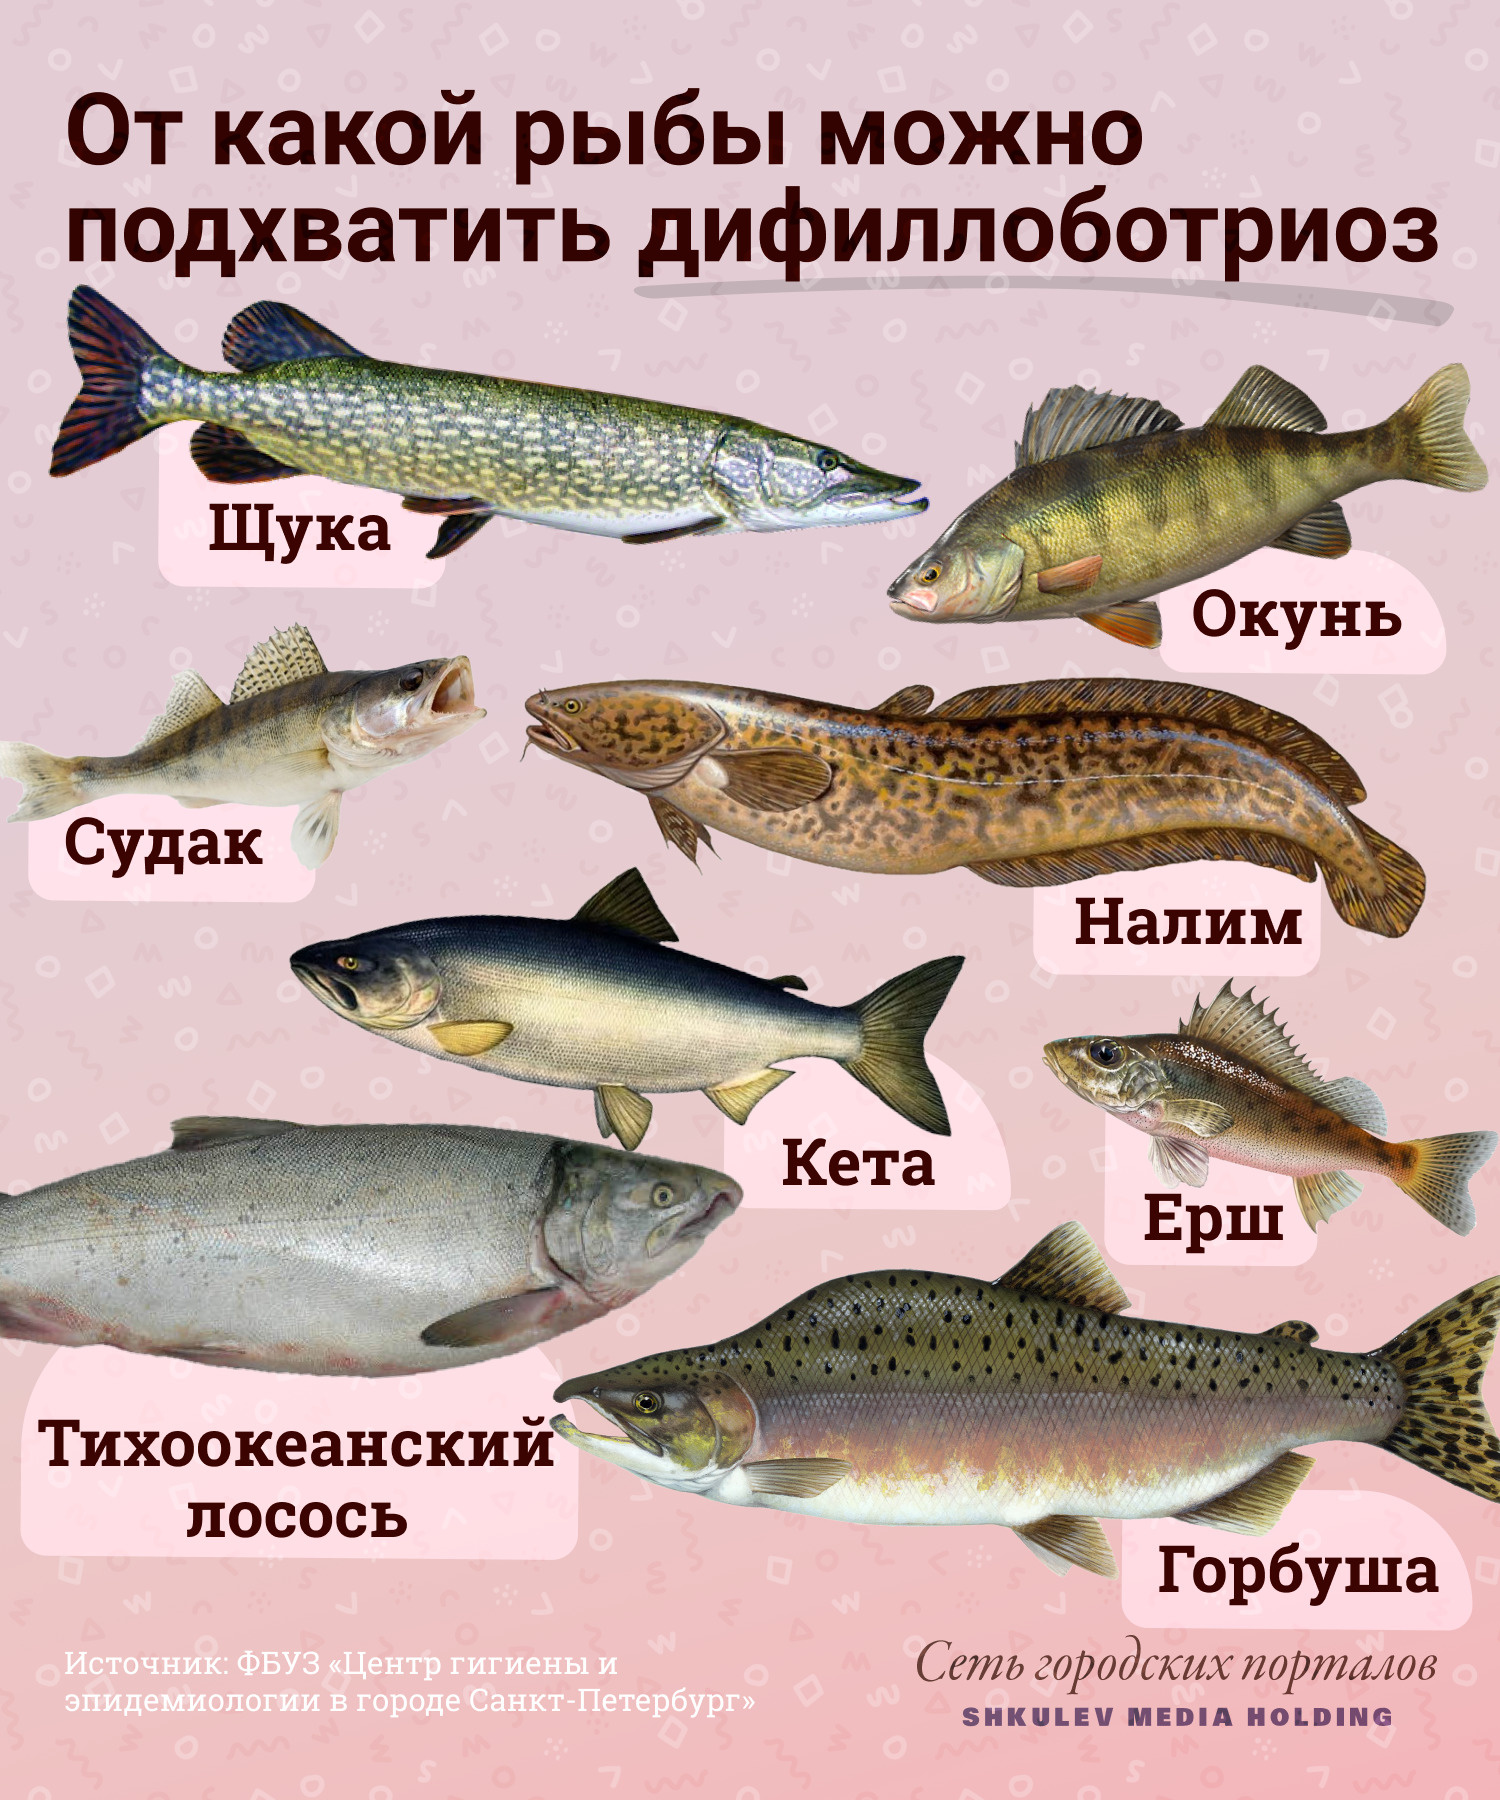 Дифиллоботриоз можно встретить в речной и морской рыбе